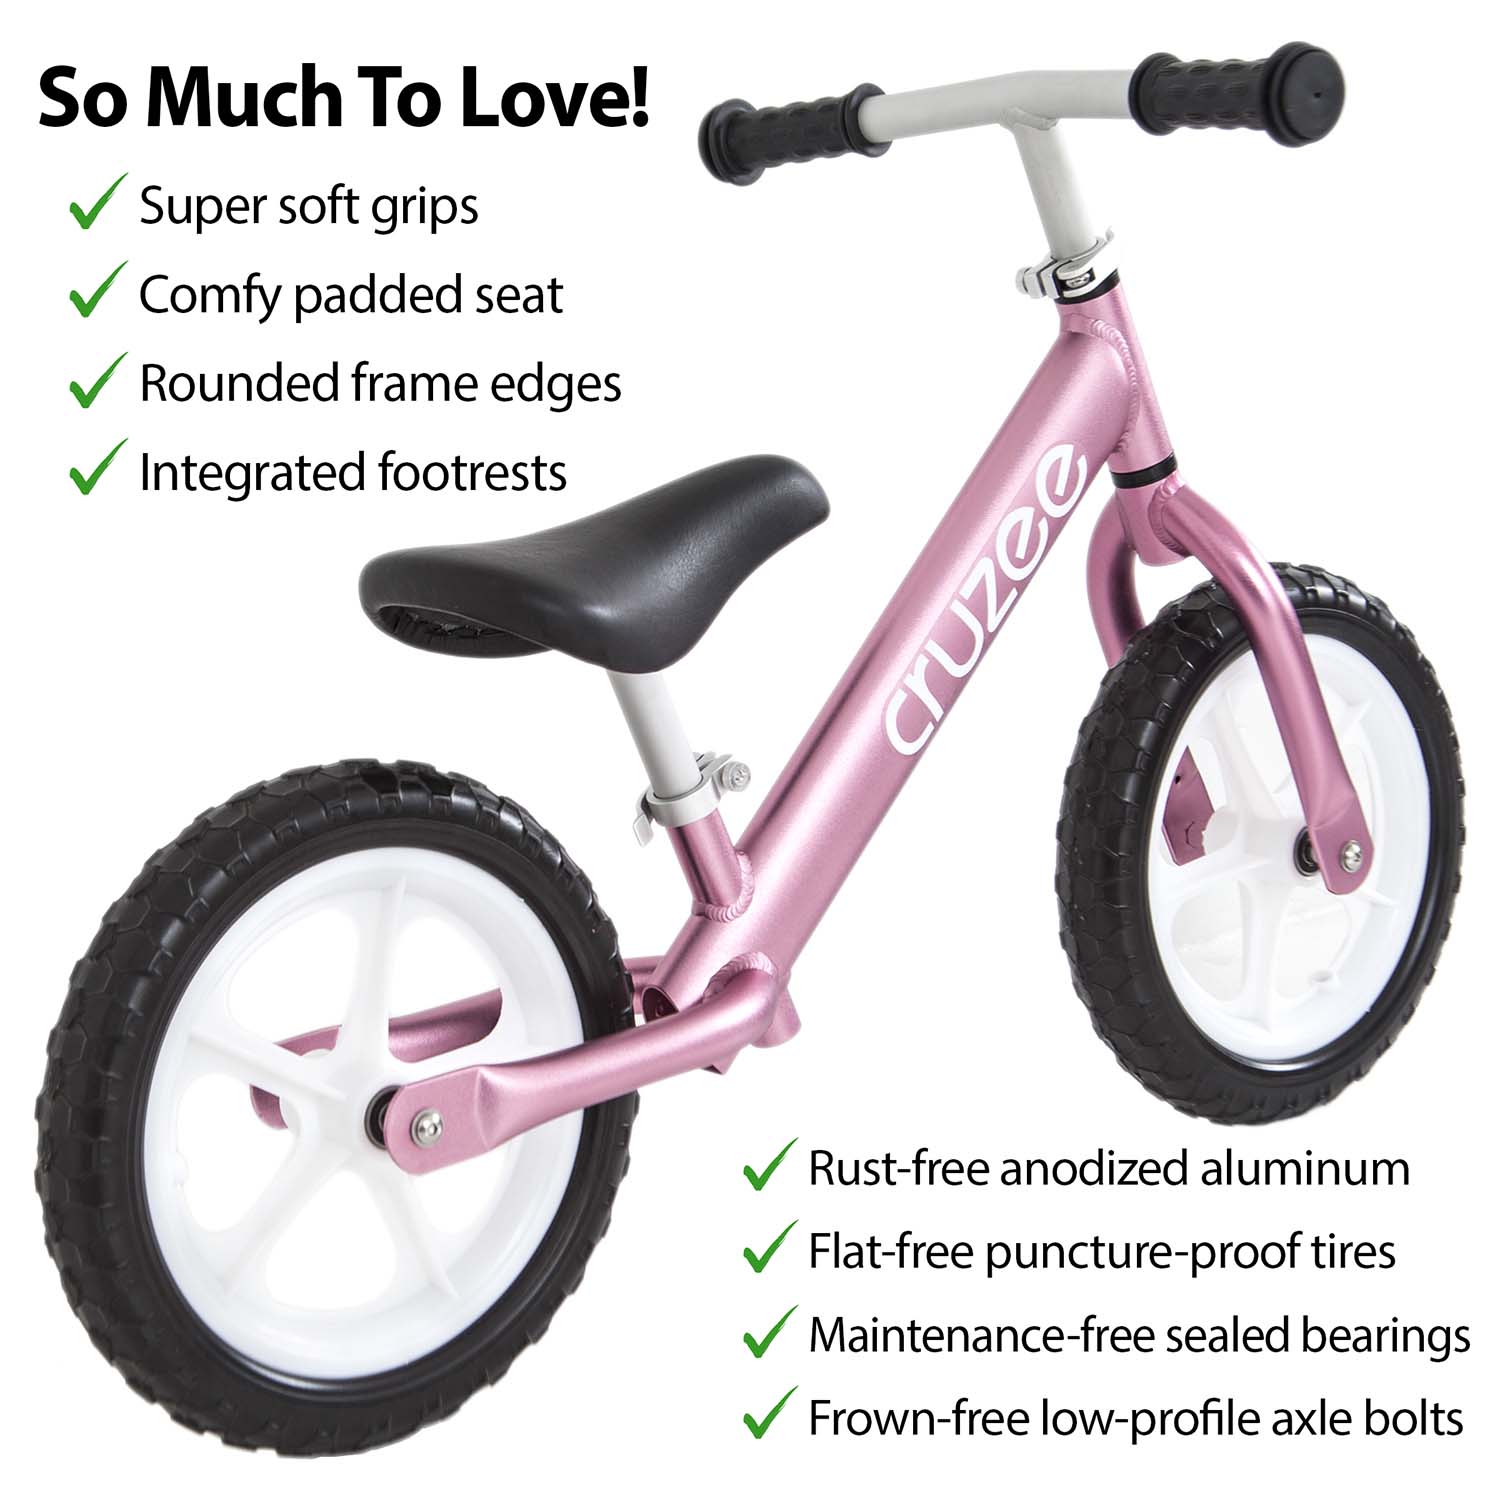 pink sparkly bike